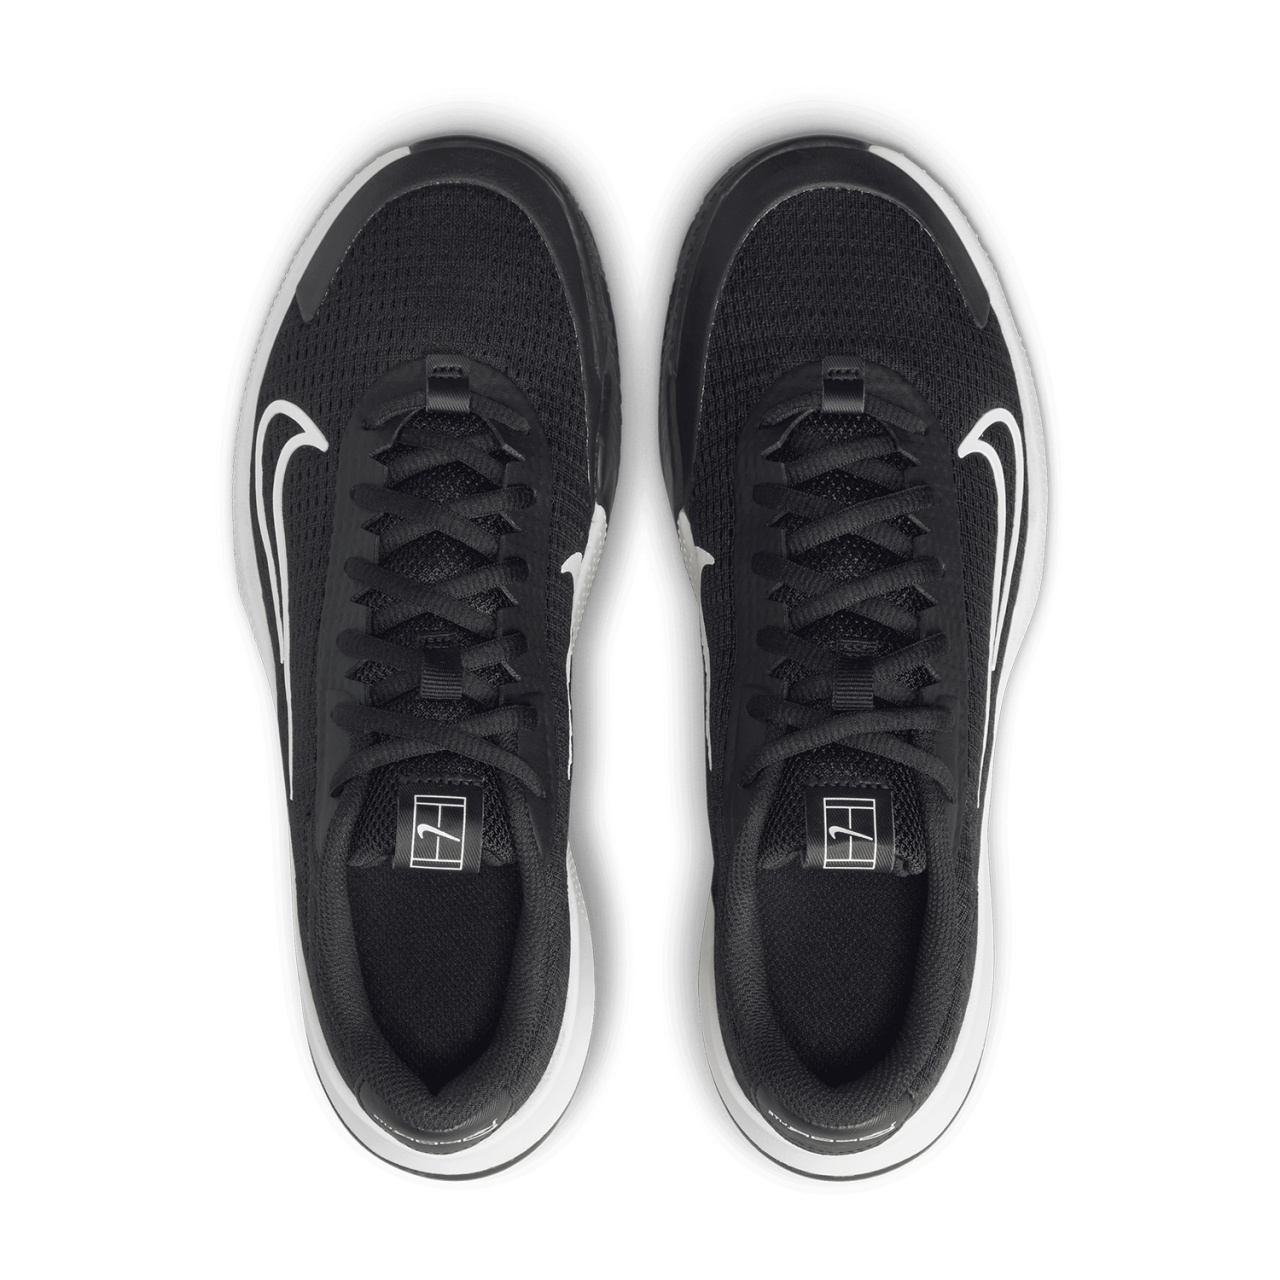 Теннисные кроссовки Nike W Vapor Lite 2 Cly. Фото �5